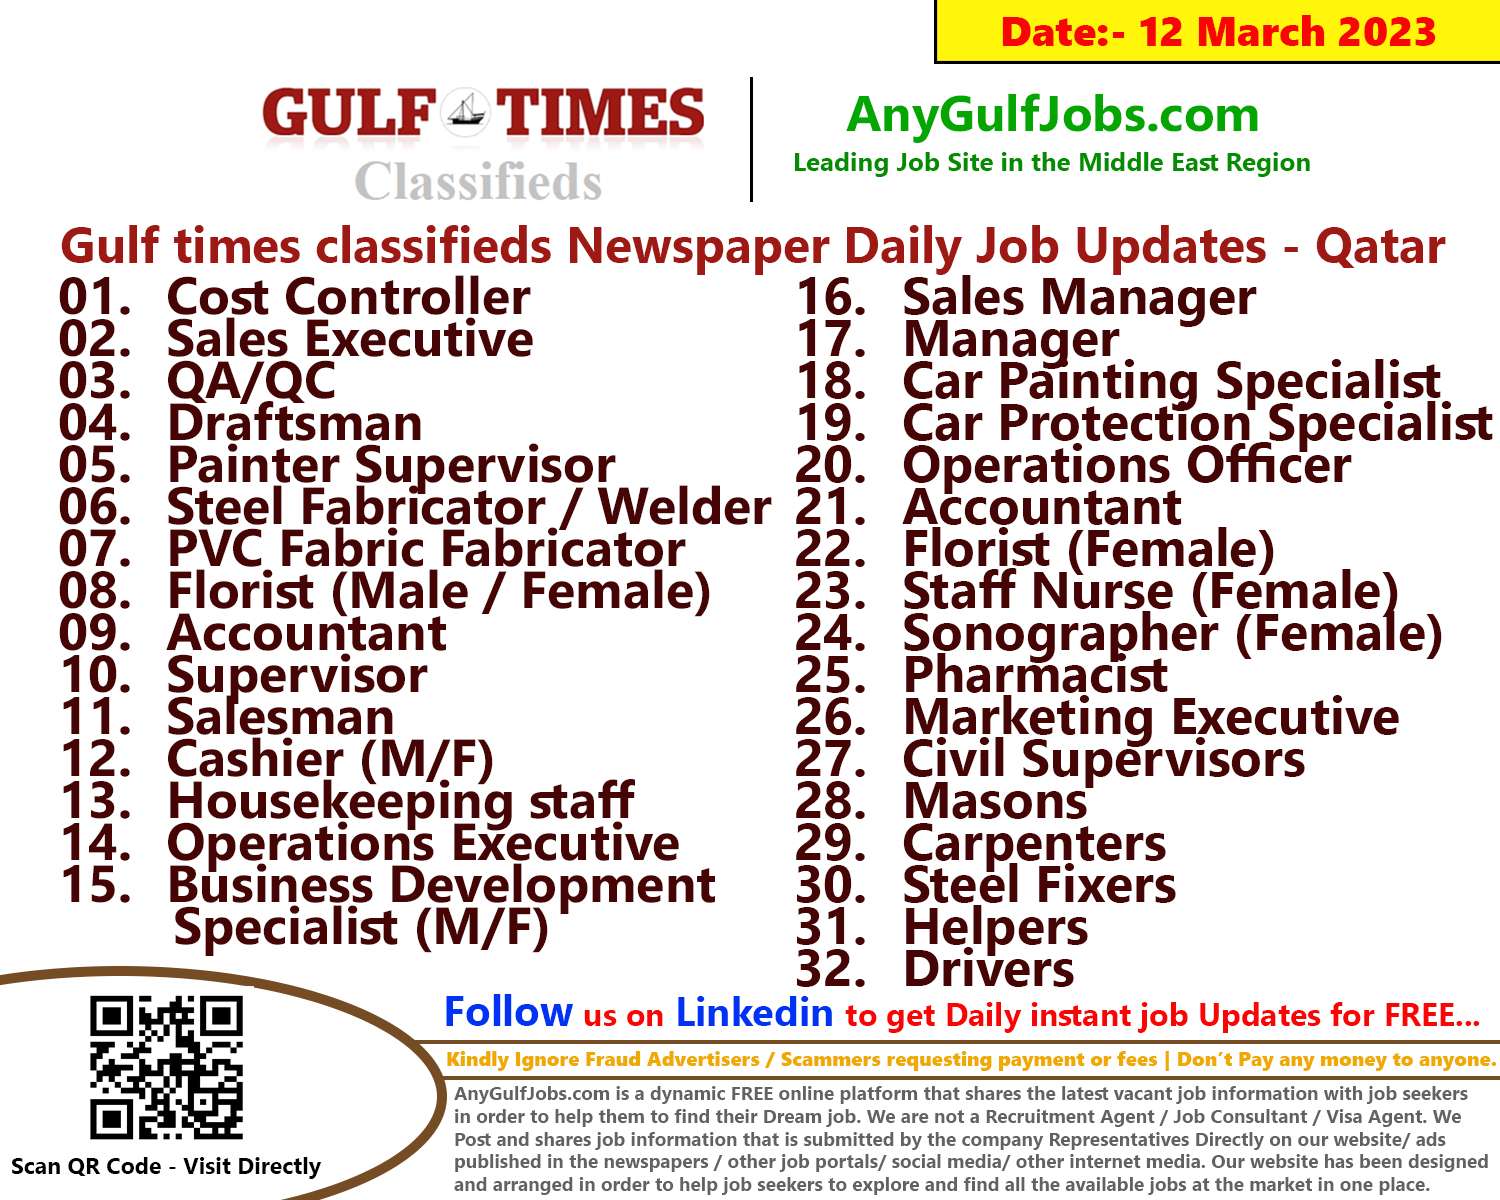 Gulf times classifieds Job Vacancies Qatar - 12 March 2023